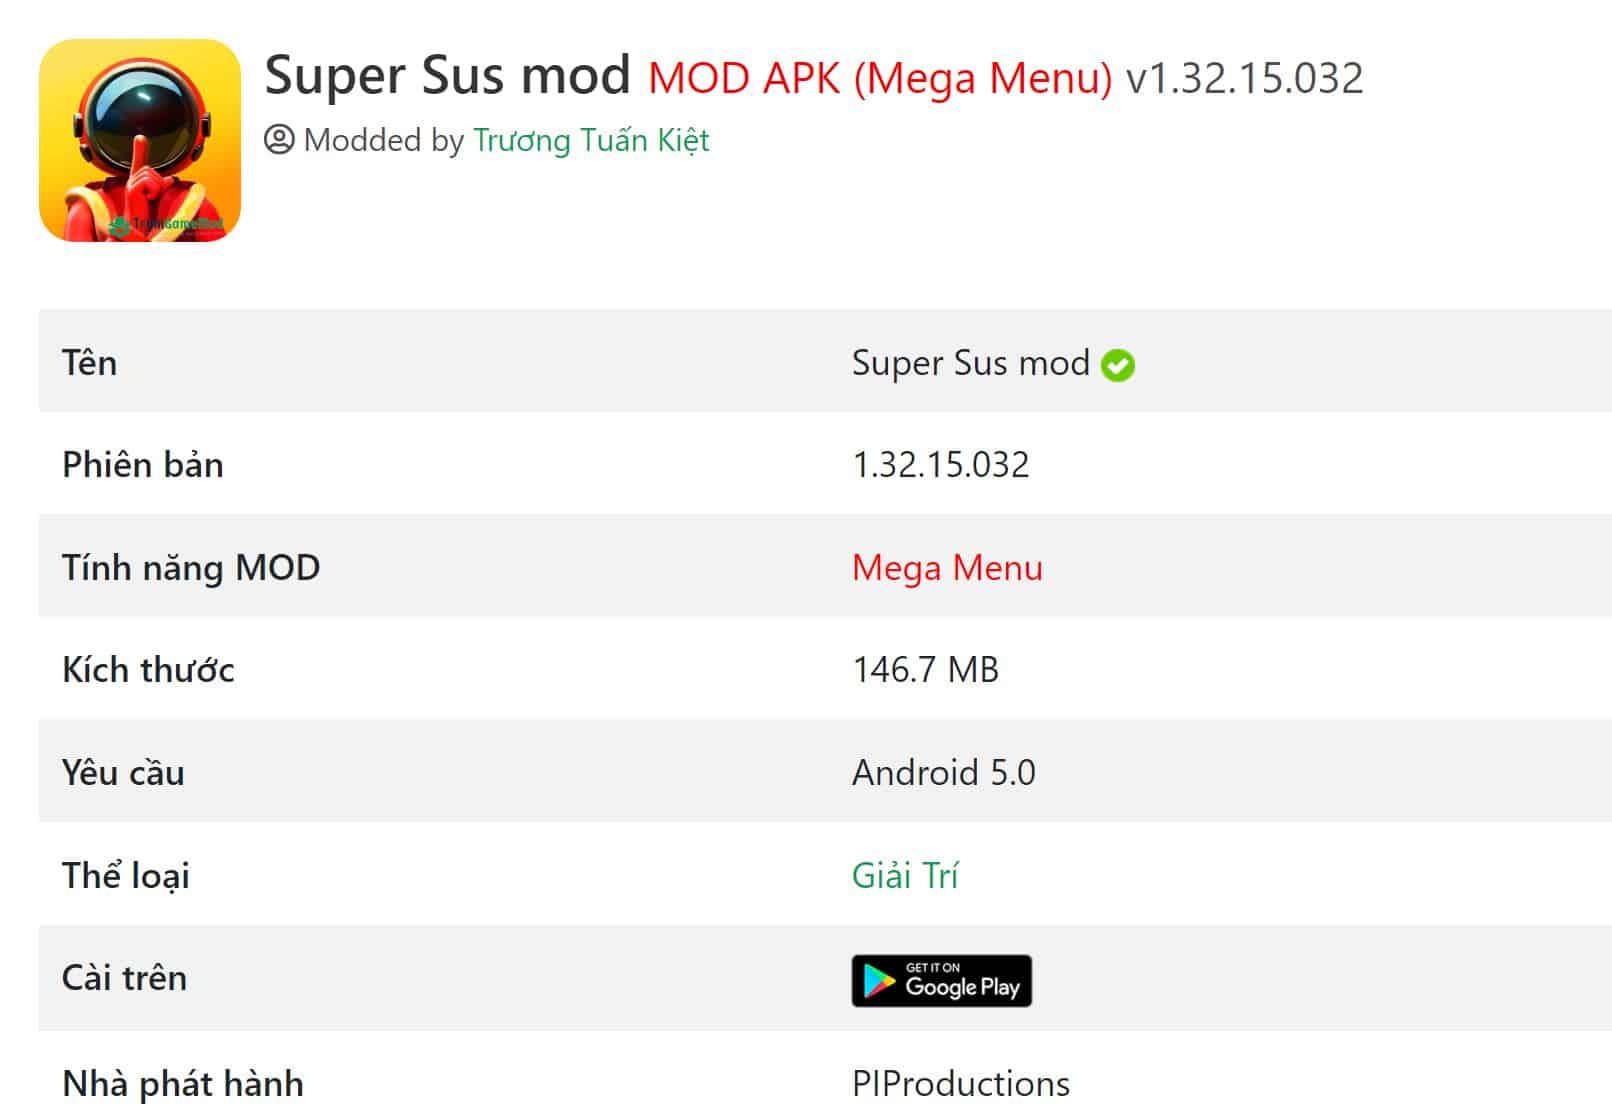 Super Sus MOD APK v1.32.15.032